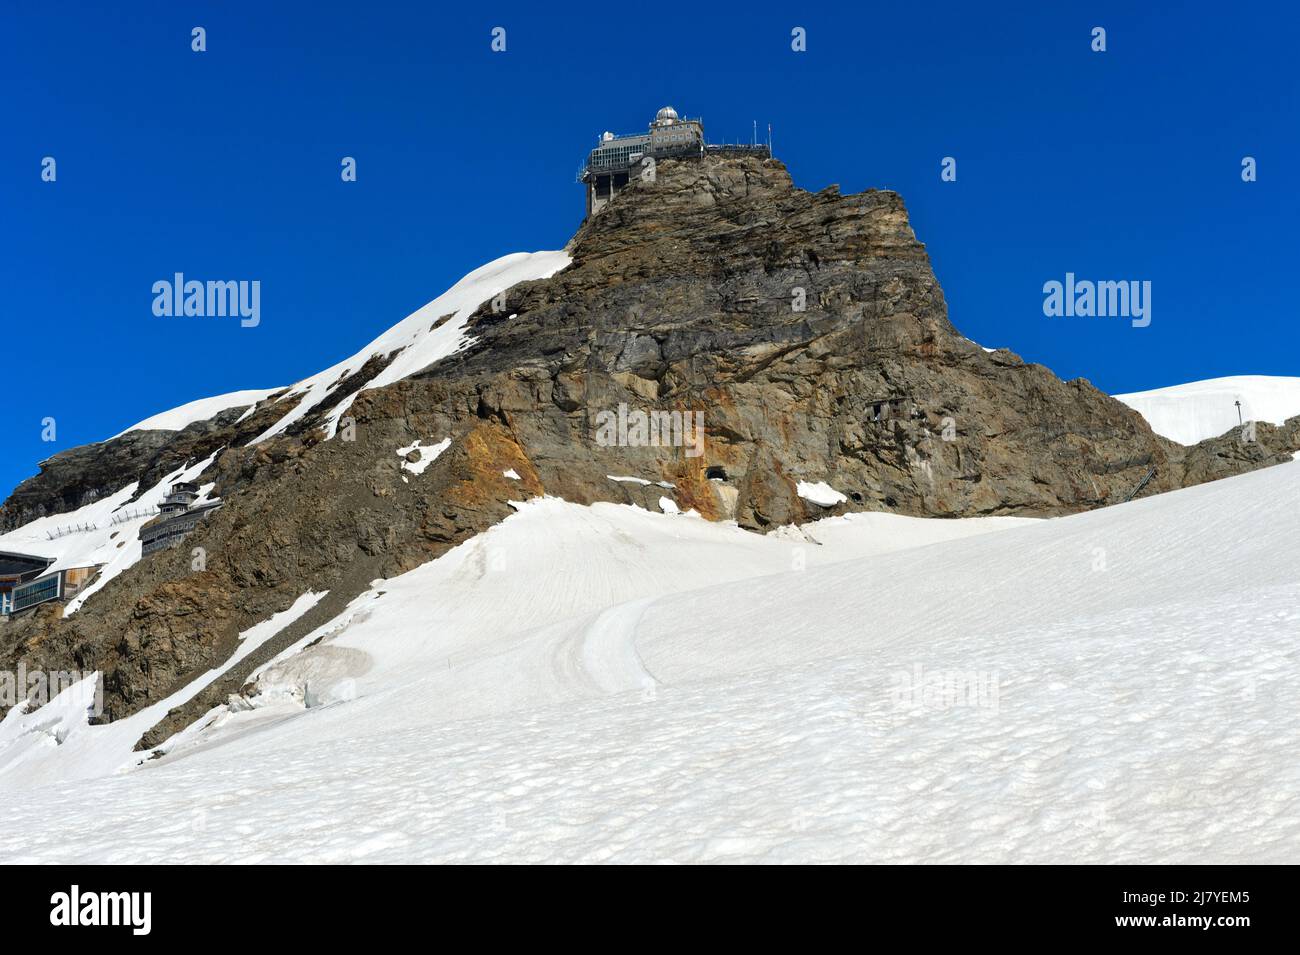 Station de recherche Observatoire Sphinx sur la Jungfraujoch, Grindelwald, Oberland bernois, Suisse Banque D'Images